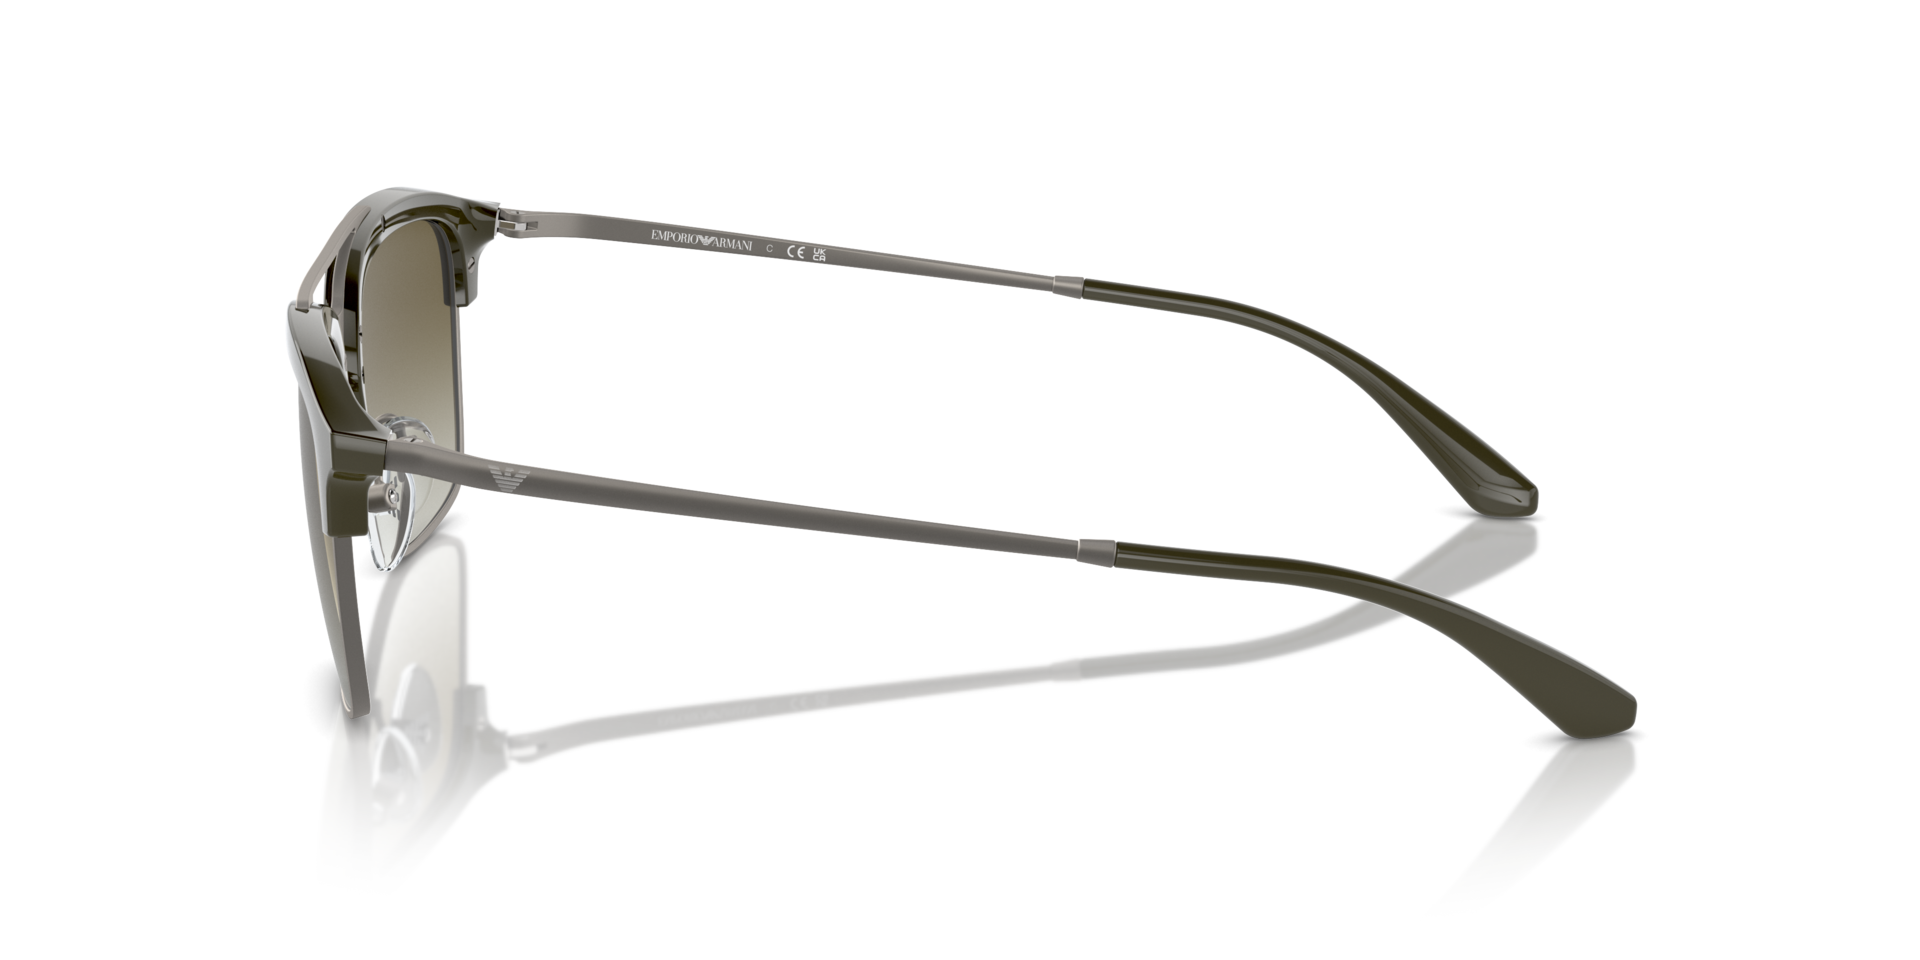 Das Bild zeigt die Sonnenbrille EA4228 30038E von der Marke Emporio Armani in grün/gunmetal.